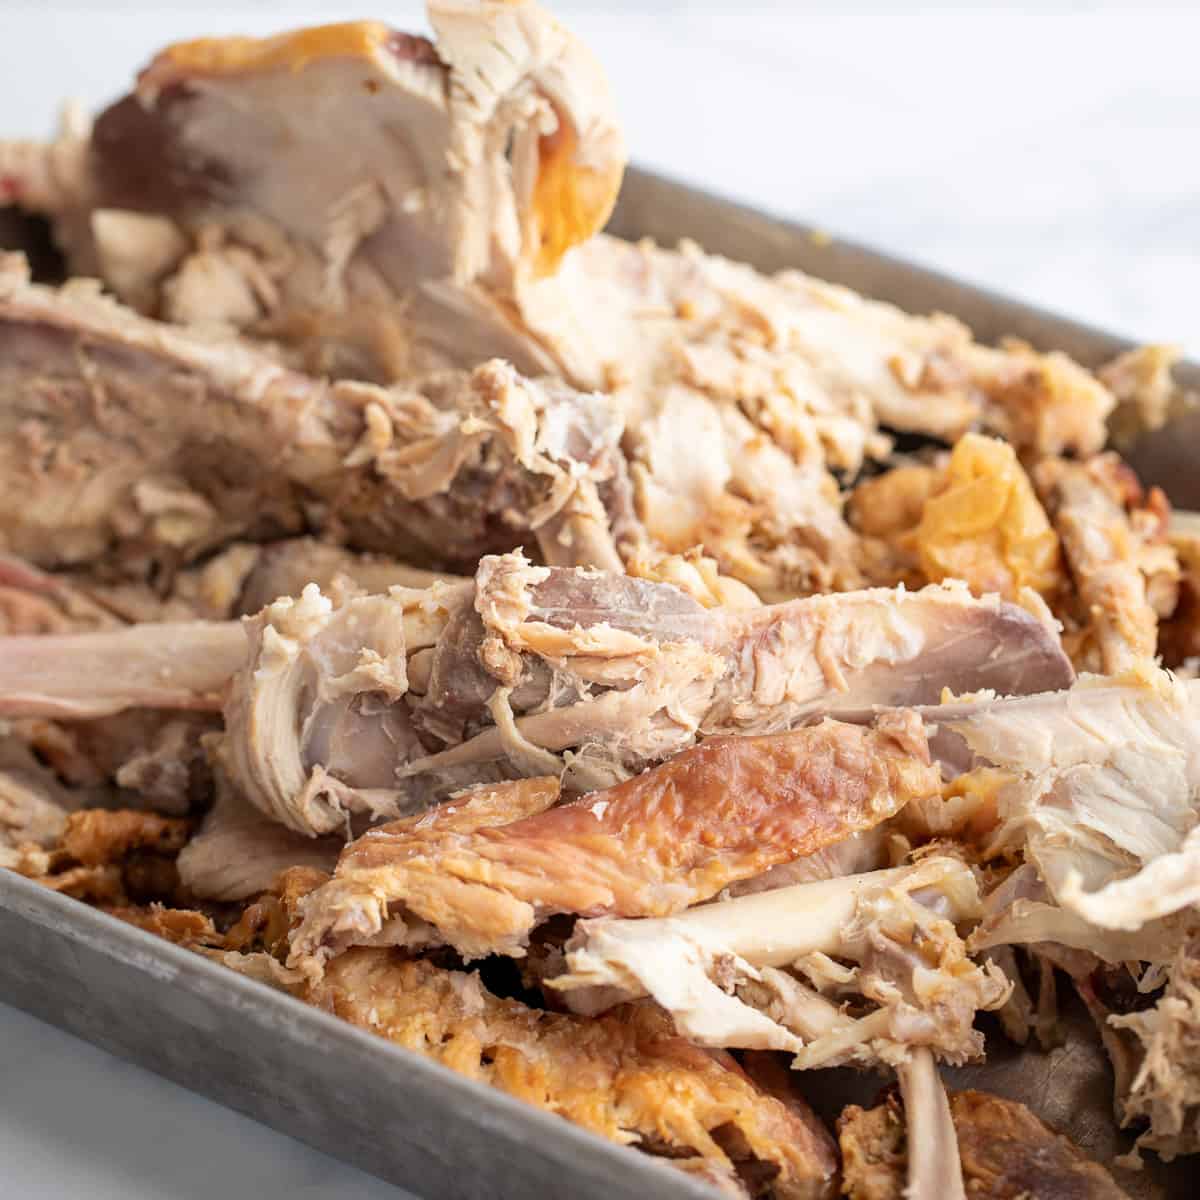 Turkey bones in a roasting pan. 